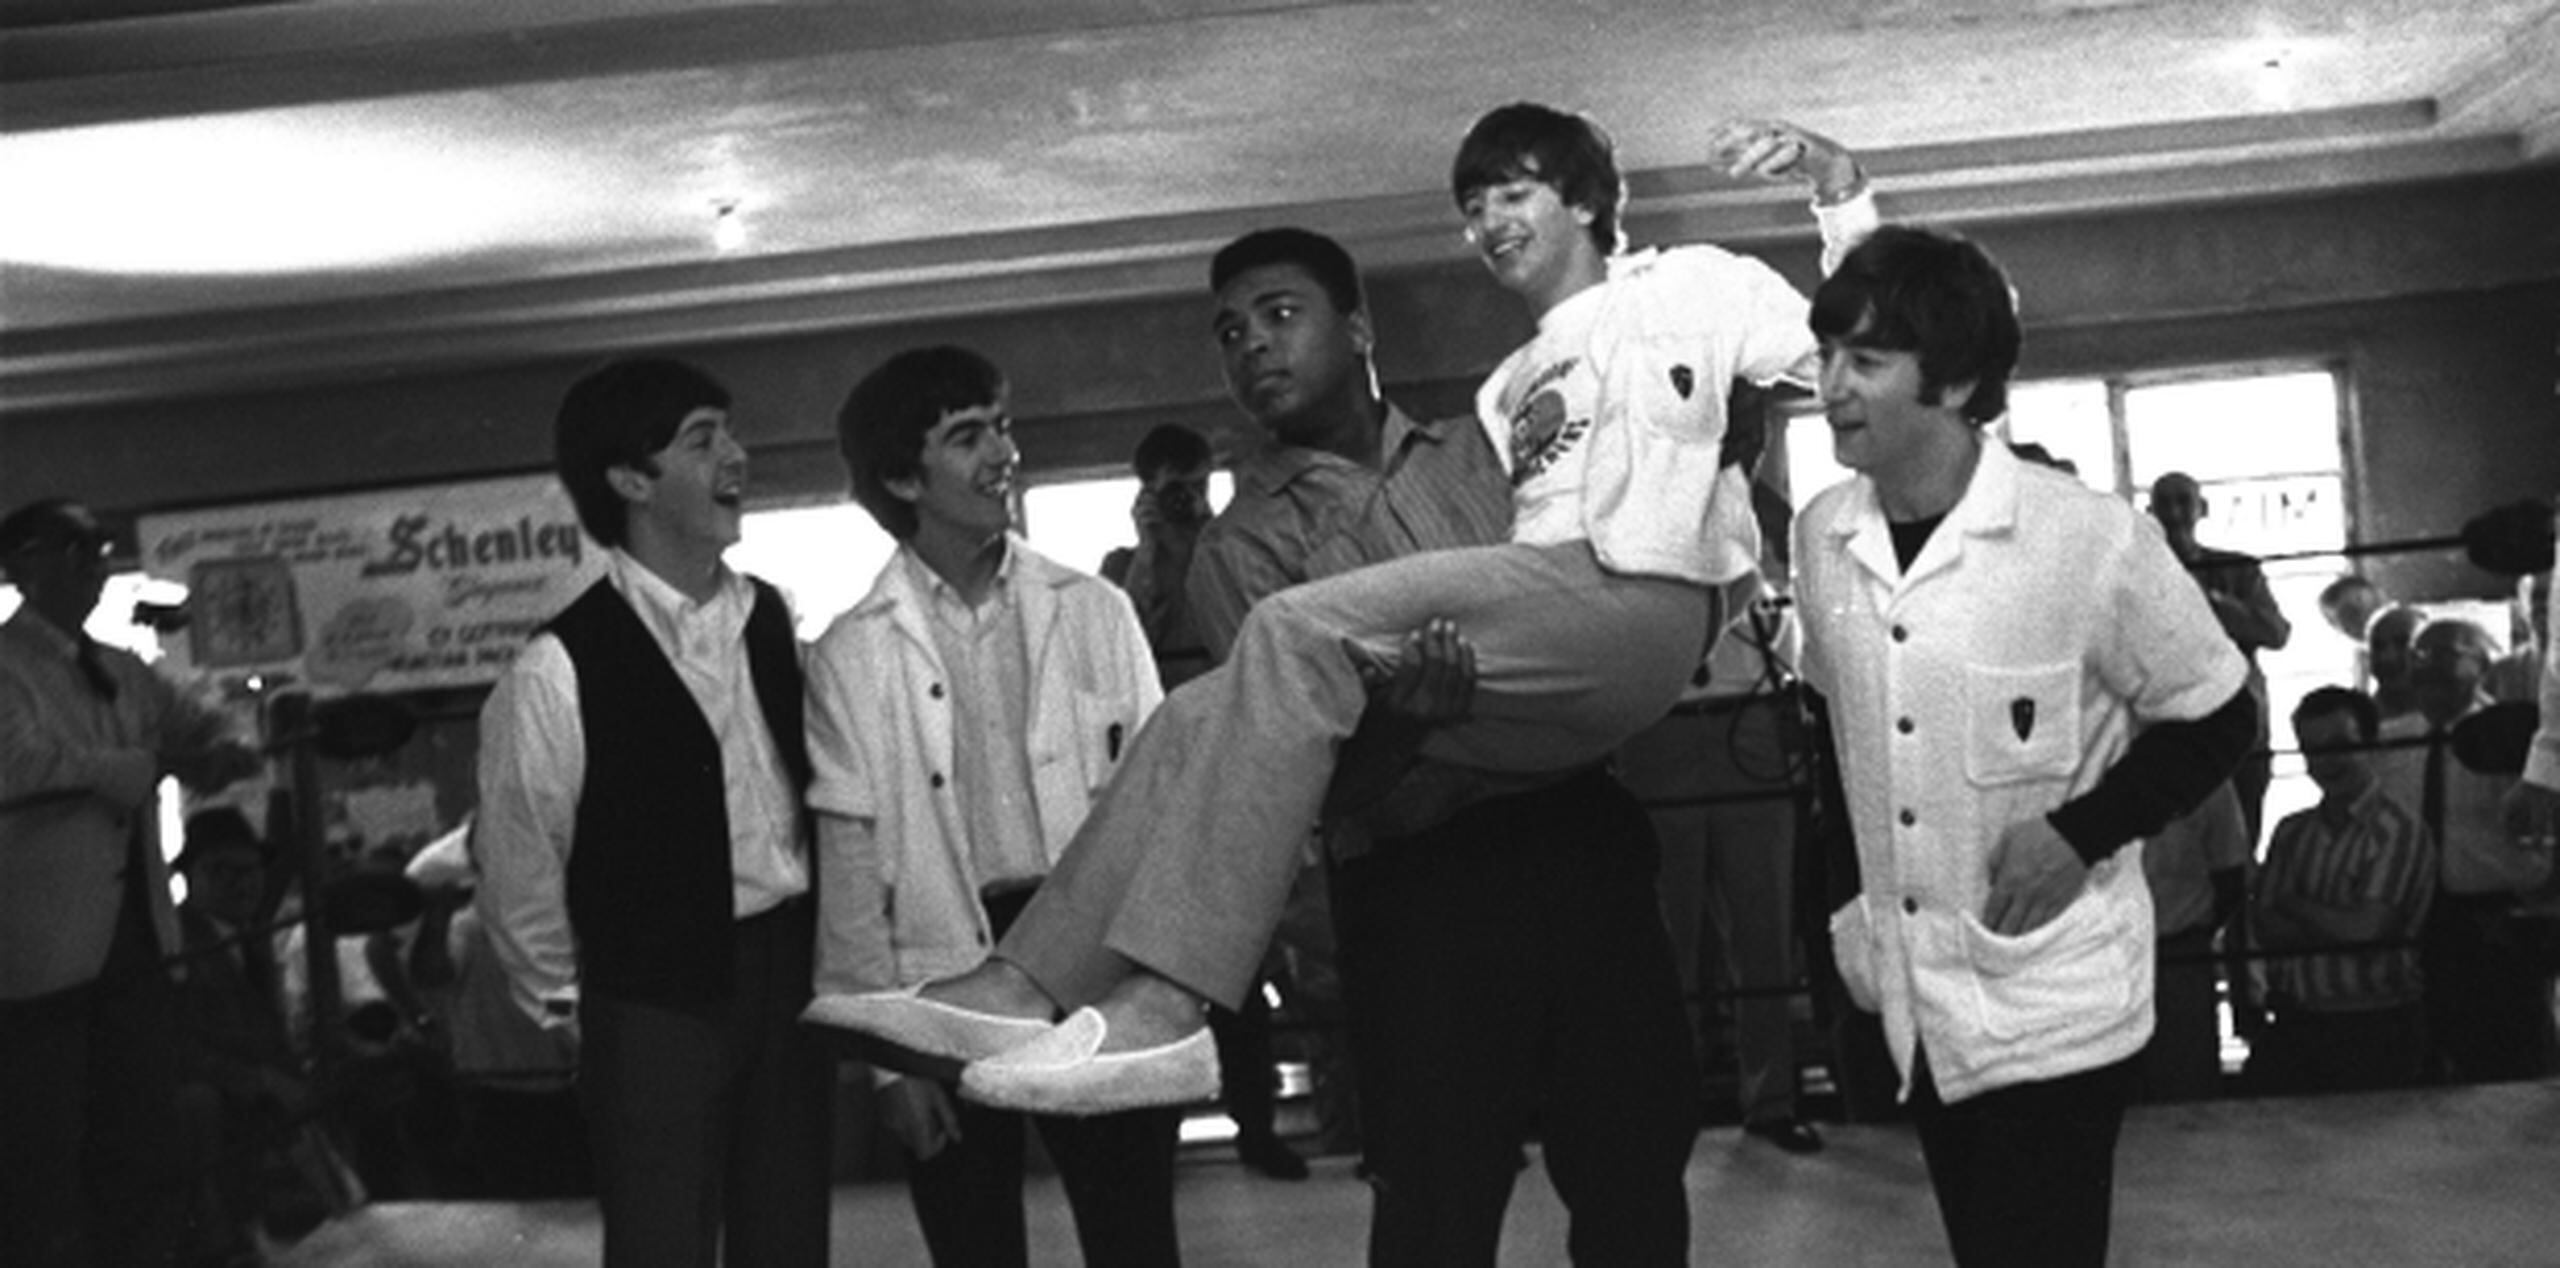 Clay aparece noqueando a los Beatles como dominós, y parado con los músicos tirados en la lona. (Prensa Asociada)